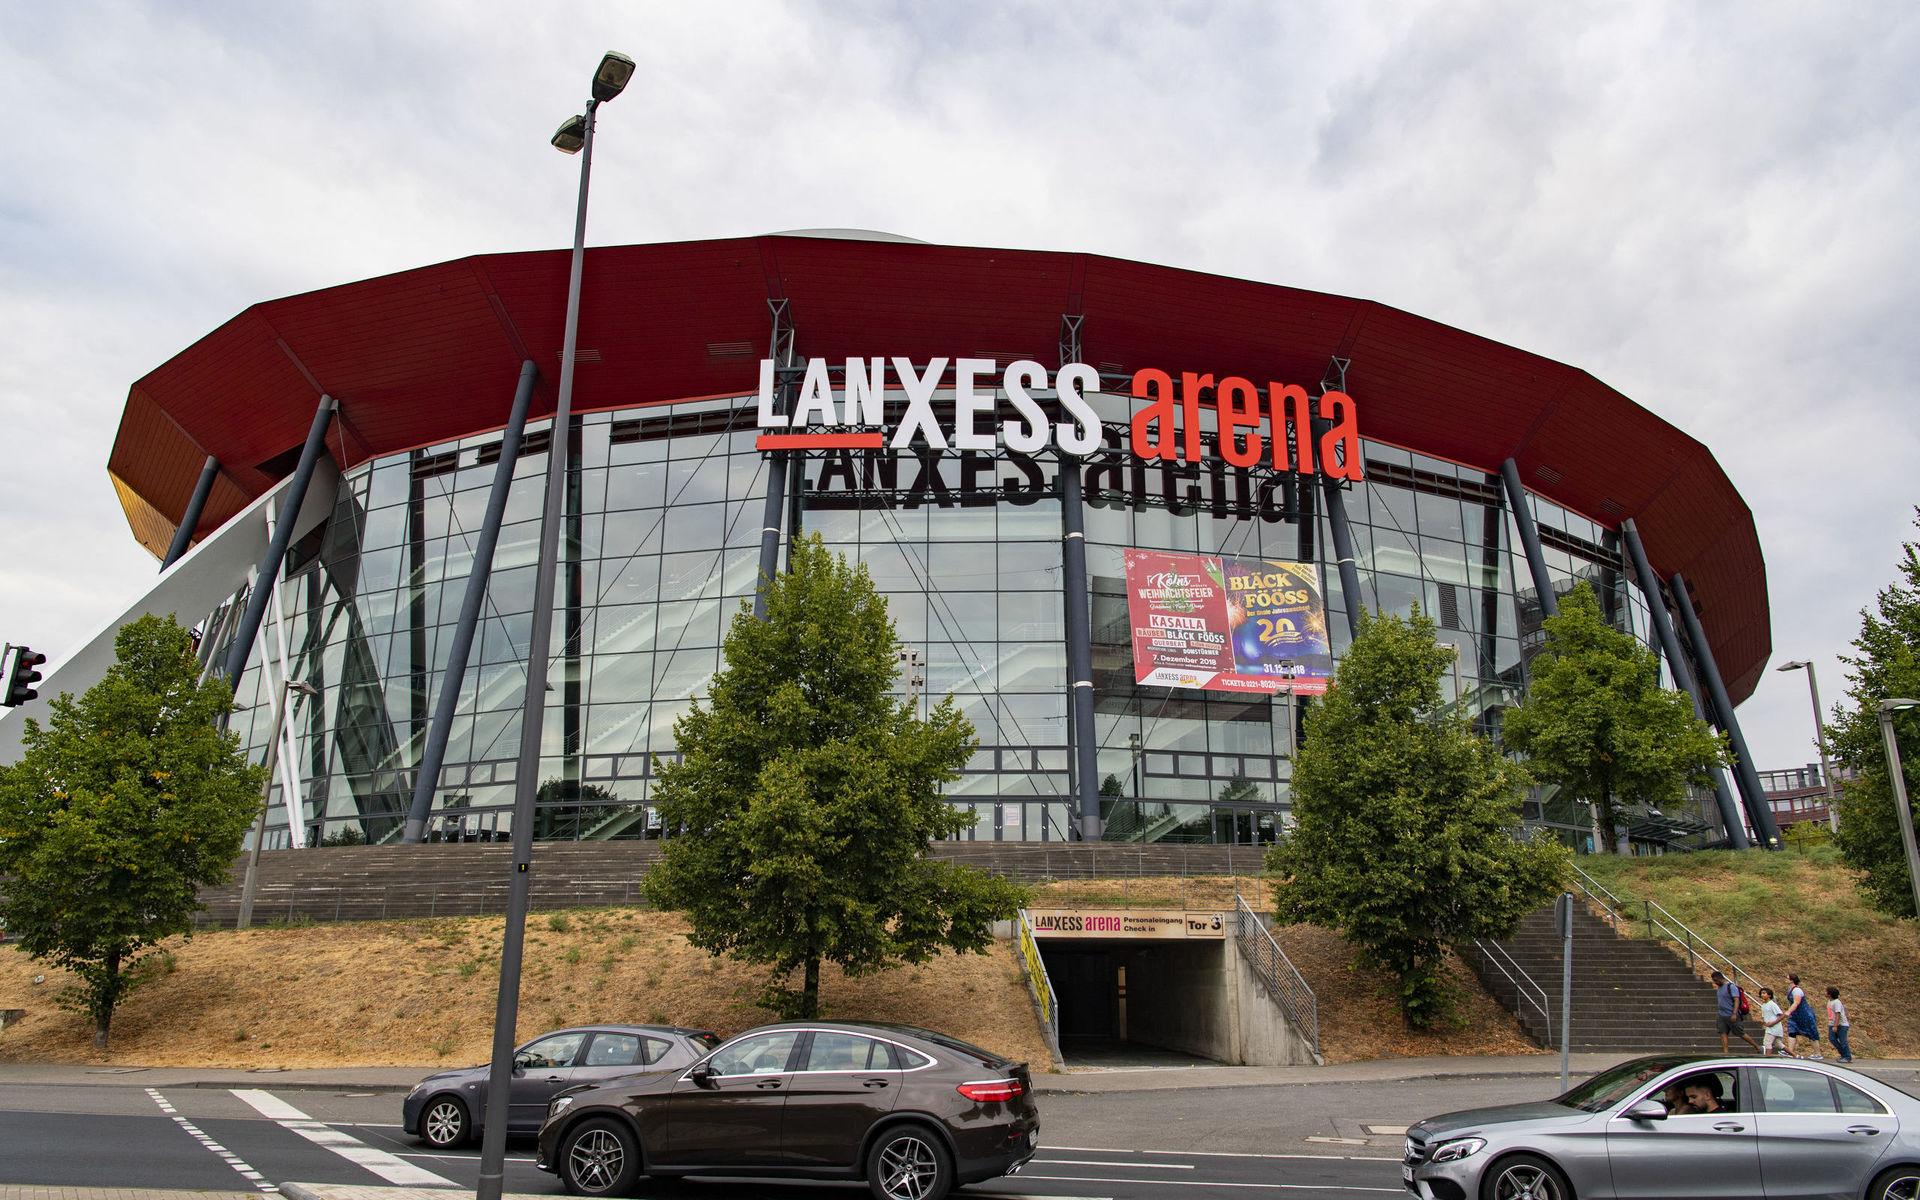 Lanxess arena i Köln. En av Europas största evenemangshallar.